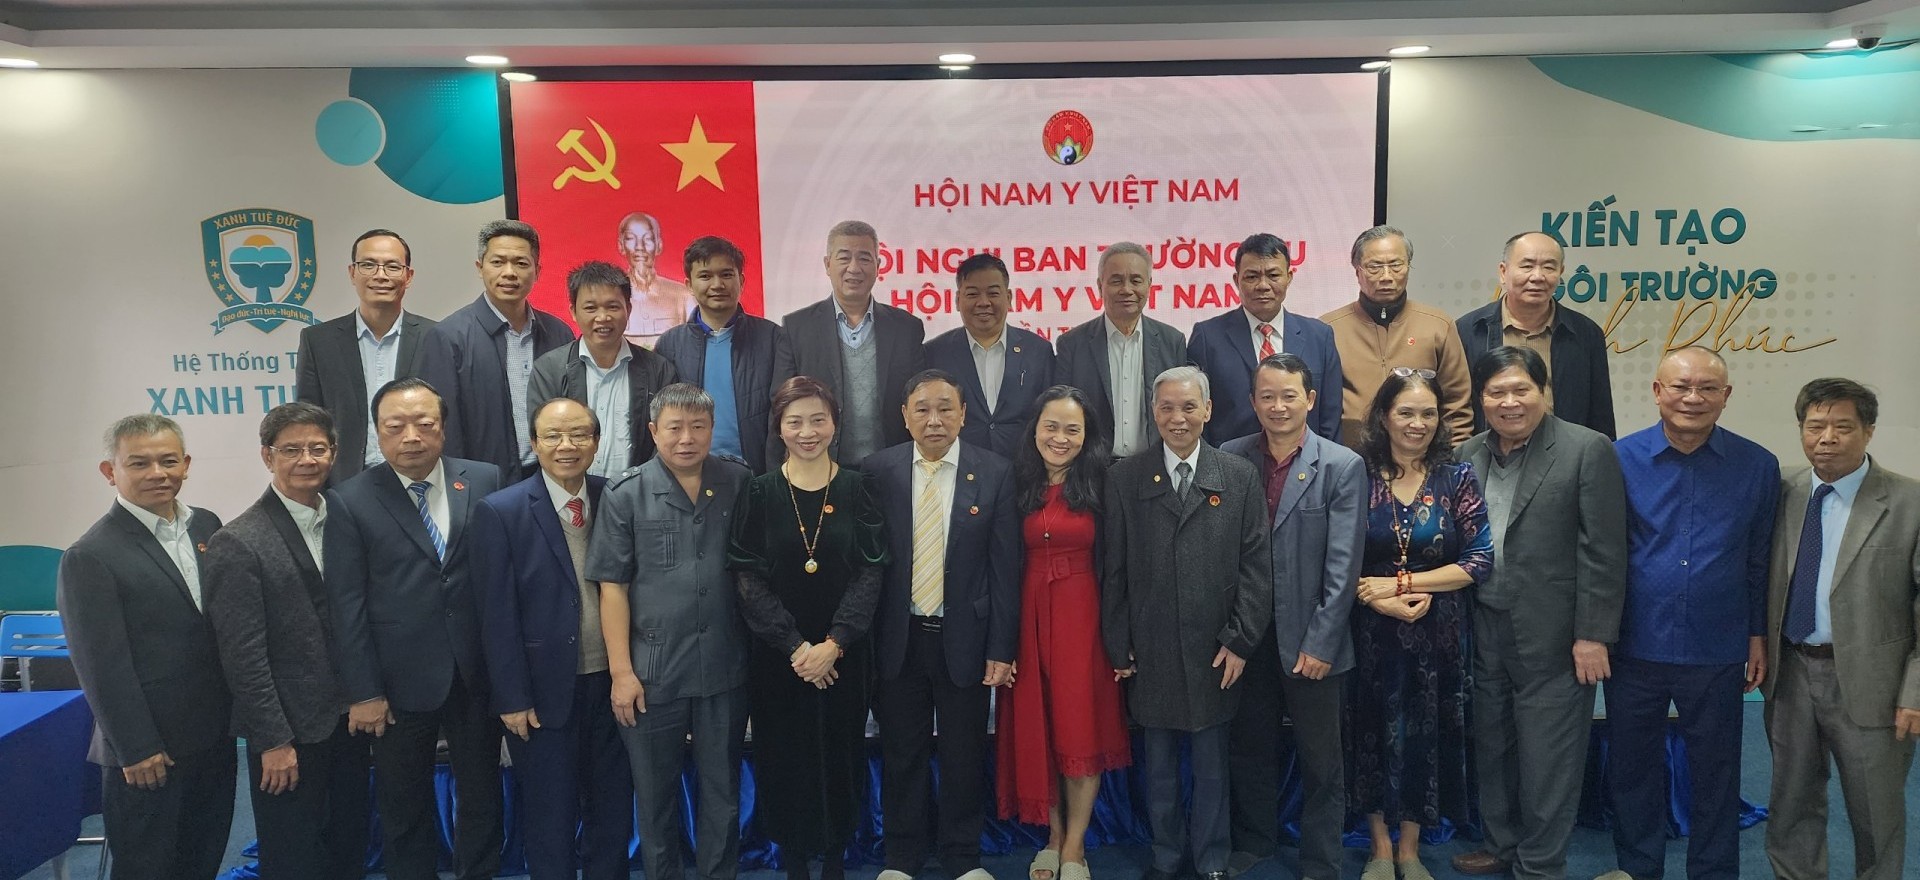 Hội Nam Y Việt Nam tổ chức Hội nghị Ban thường vụ lần thứ 4